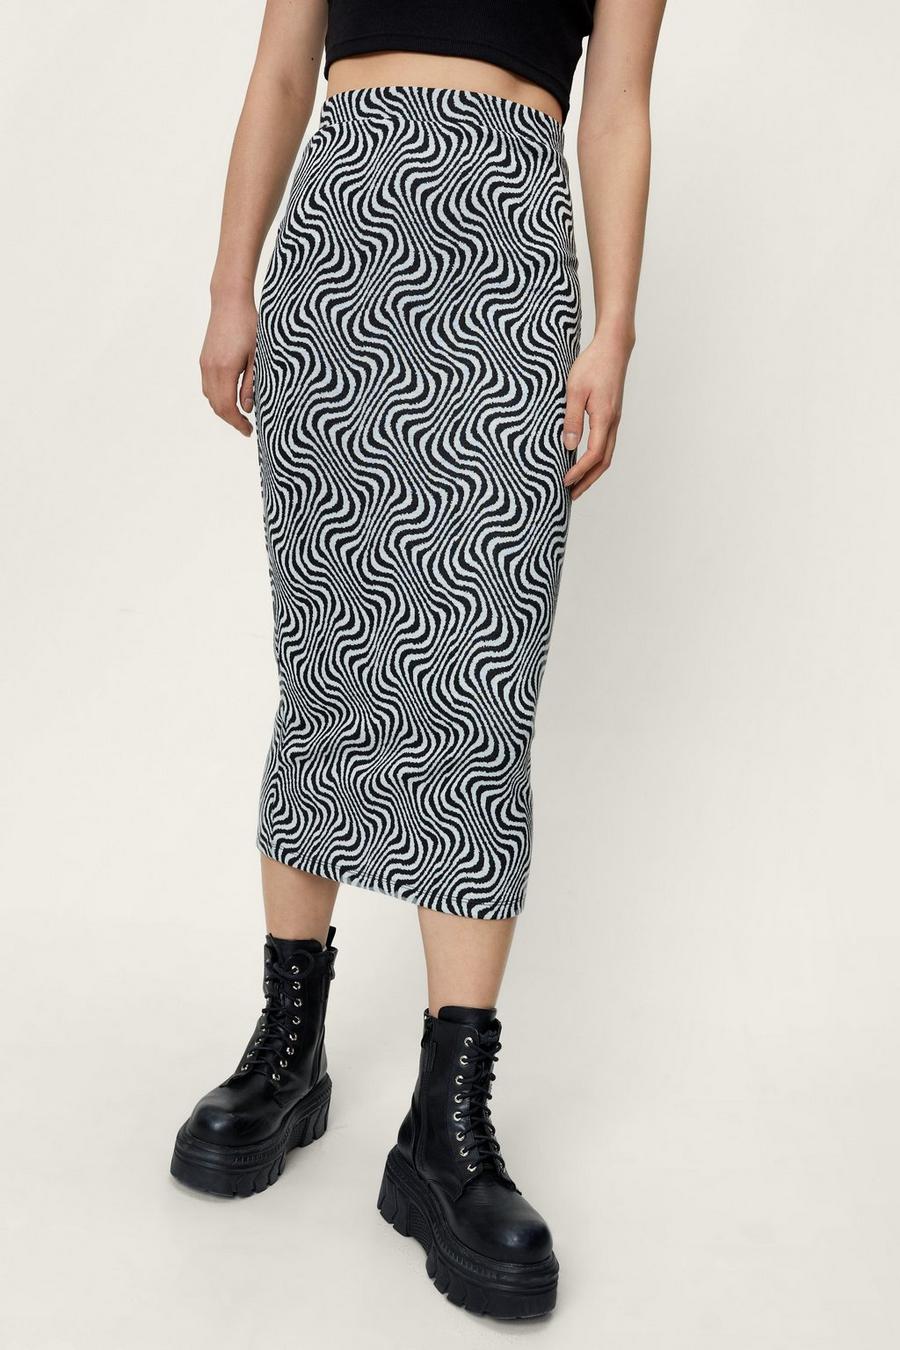 Retro Patterned Midi Skirt